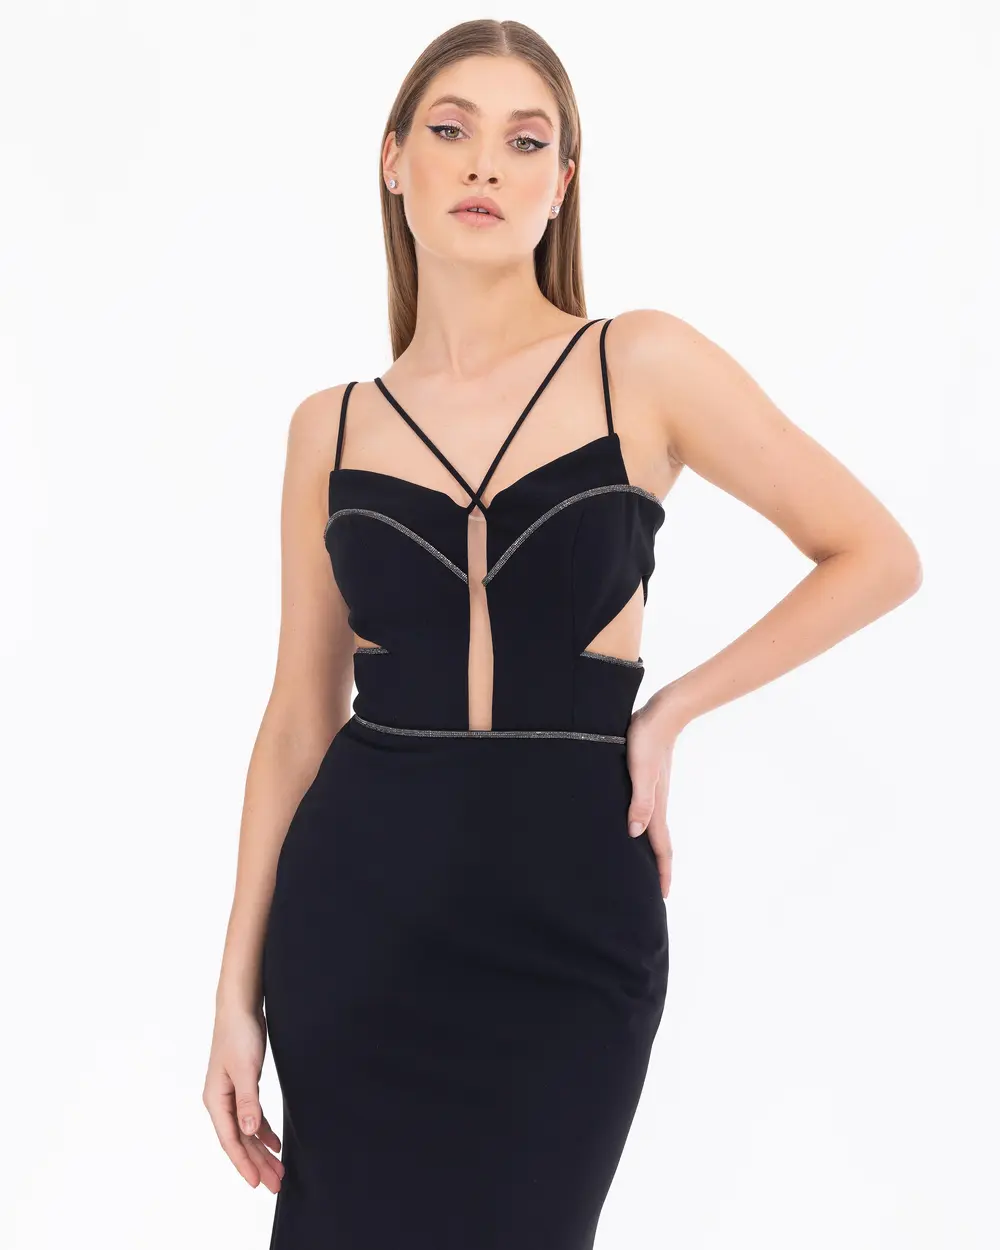 Asymmetrical Collar Maxi Length Strap Evening Dress